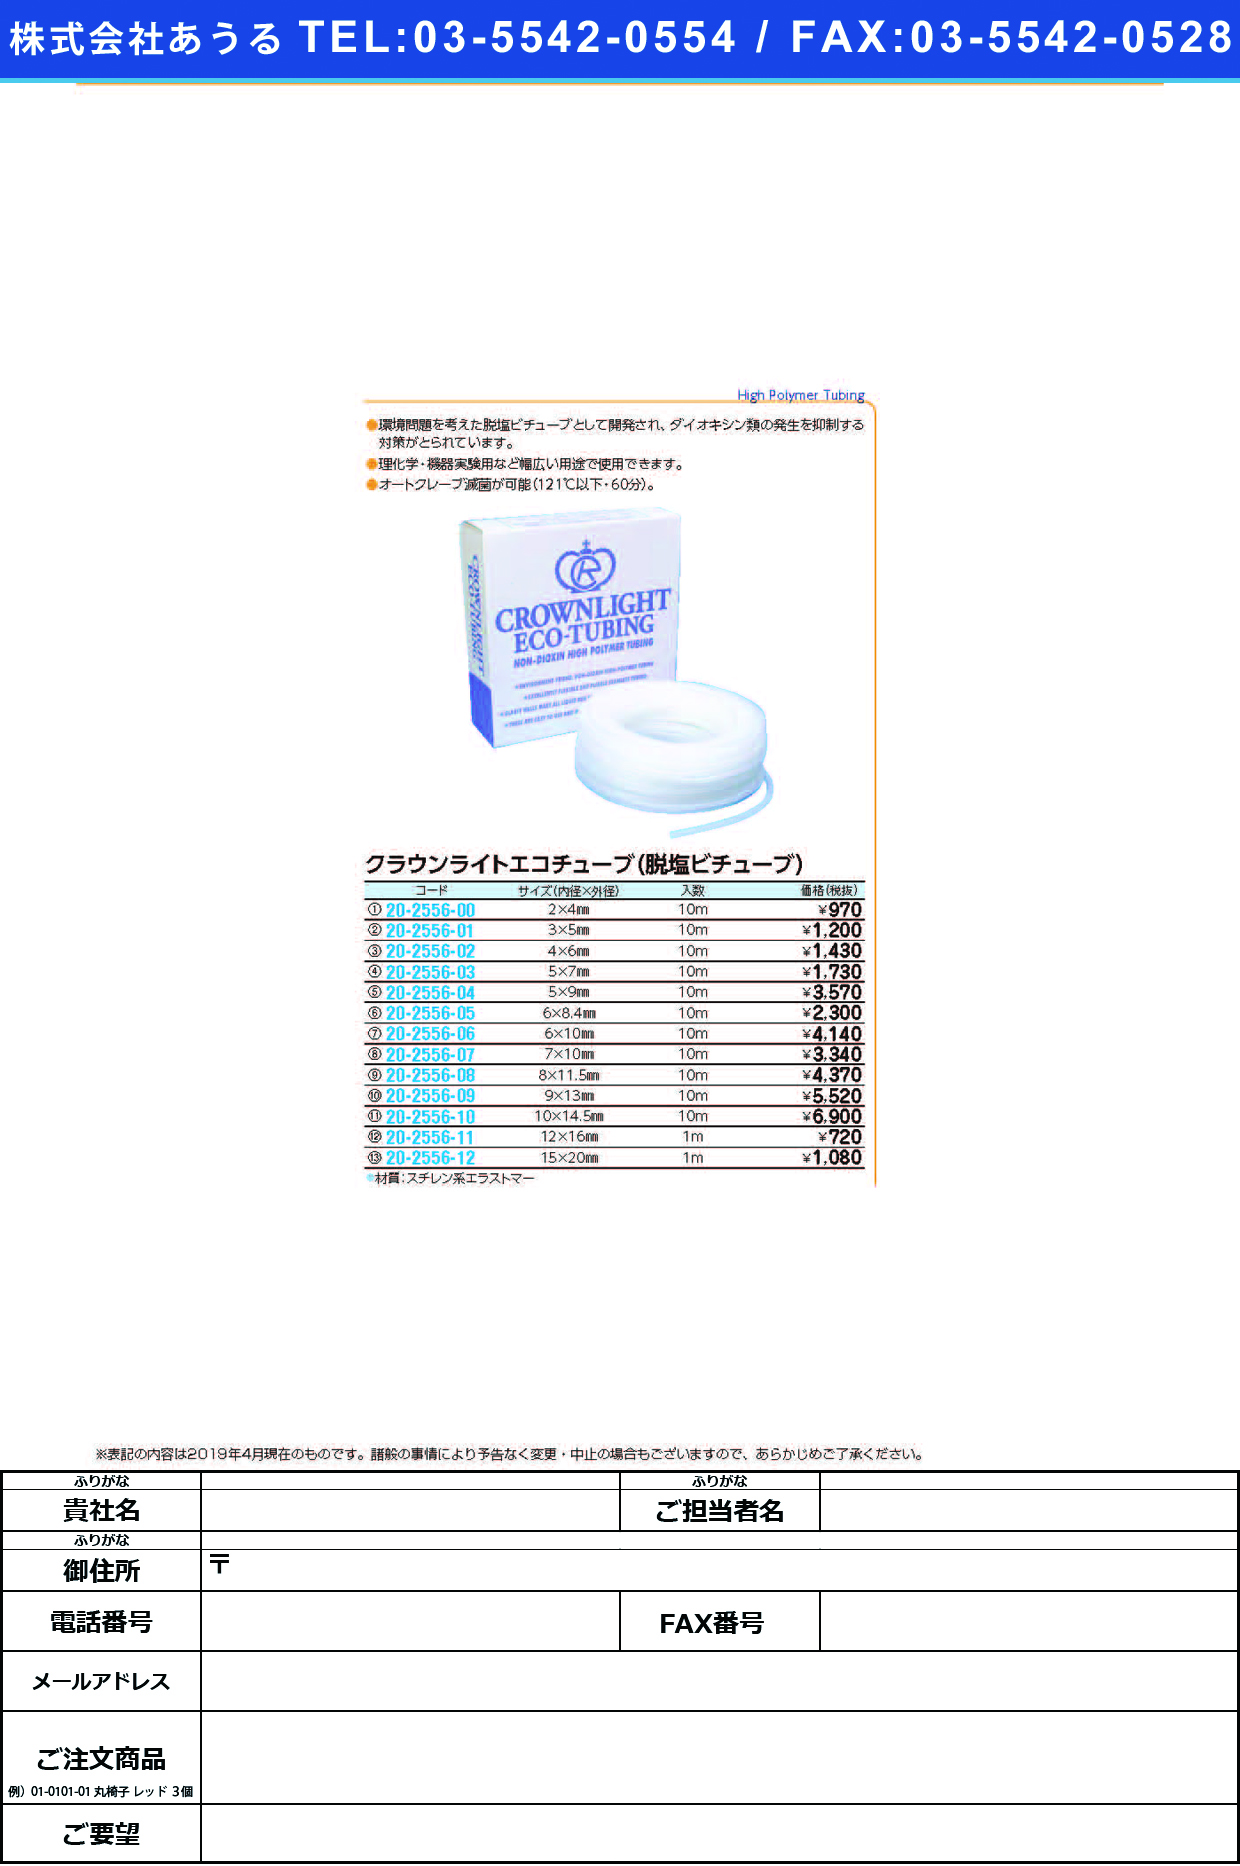 (20-2556-01)クラウンライトエコチューブ 3.0X5.0(10Mｲﾘ) ｸﾗｳﾝﾗｲﾄｴｺﾁｭｰﾌﾞ【1袋単位】【2019年カタログ商品】